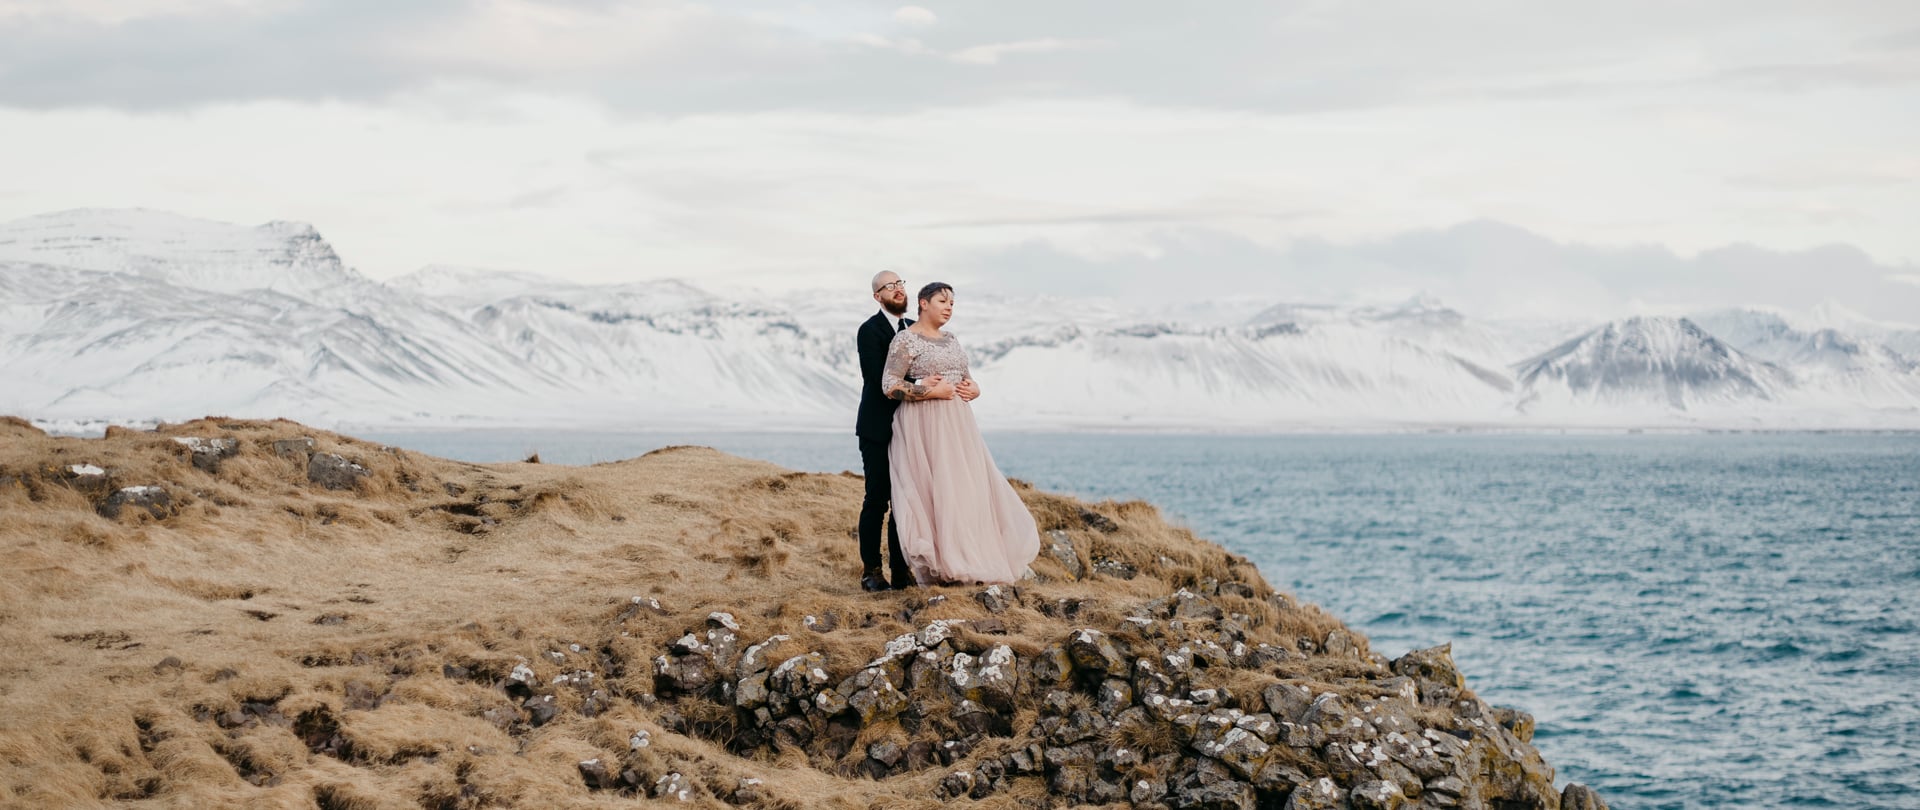 Jade & Oliver Wedding Video Filmed at Budir, Iceland